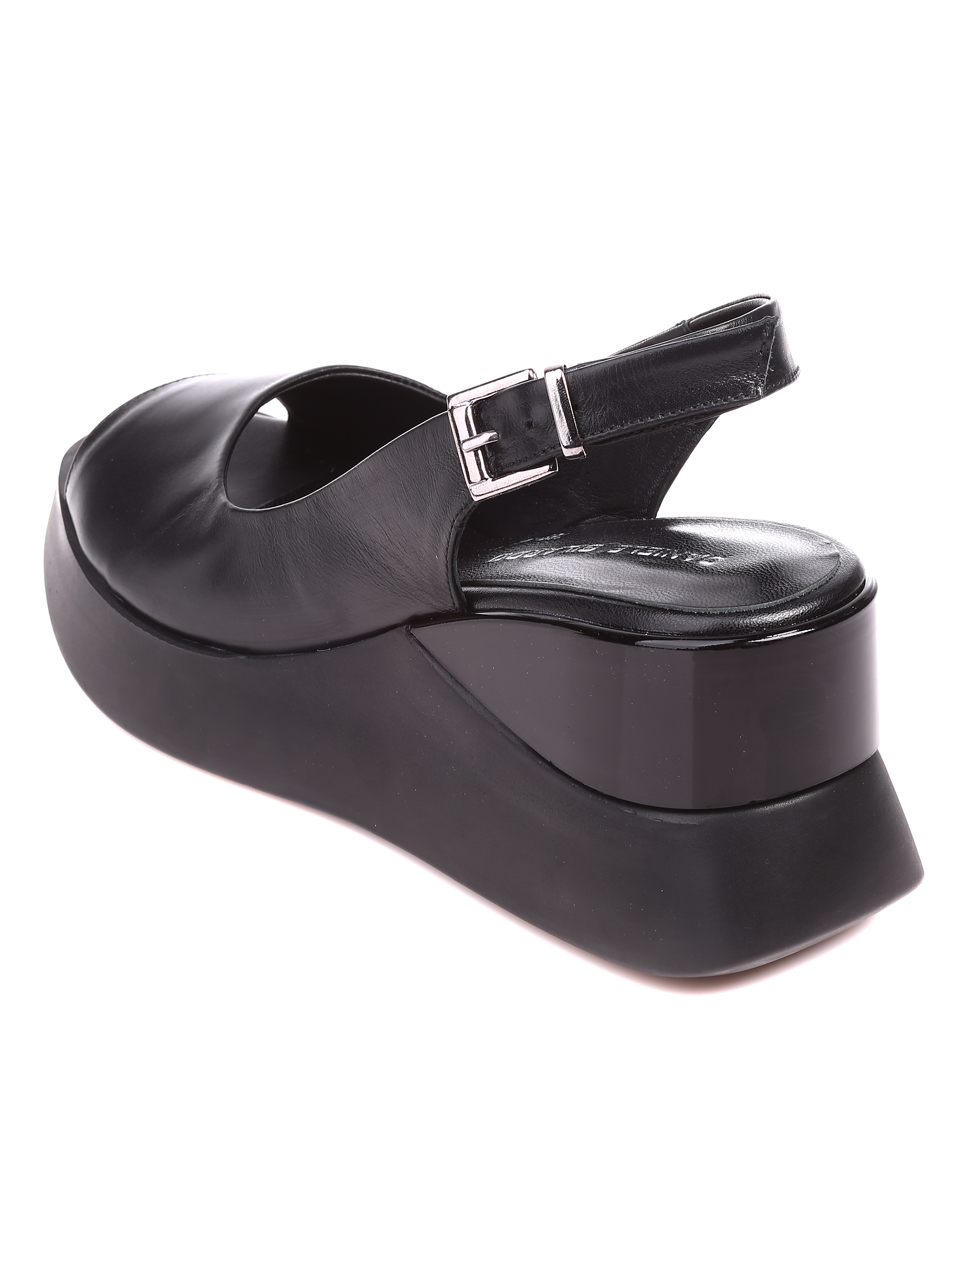 Ежедневни дамски сандали на платформа от естествена кожа 4AT-22353 black